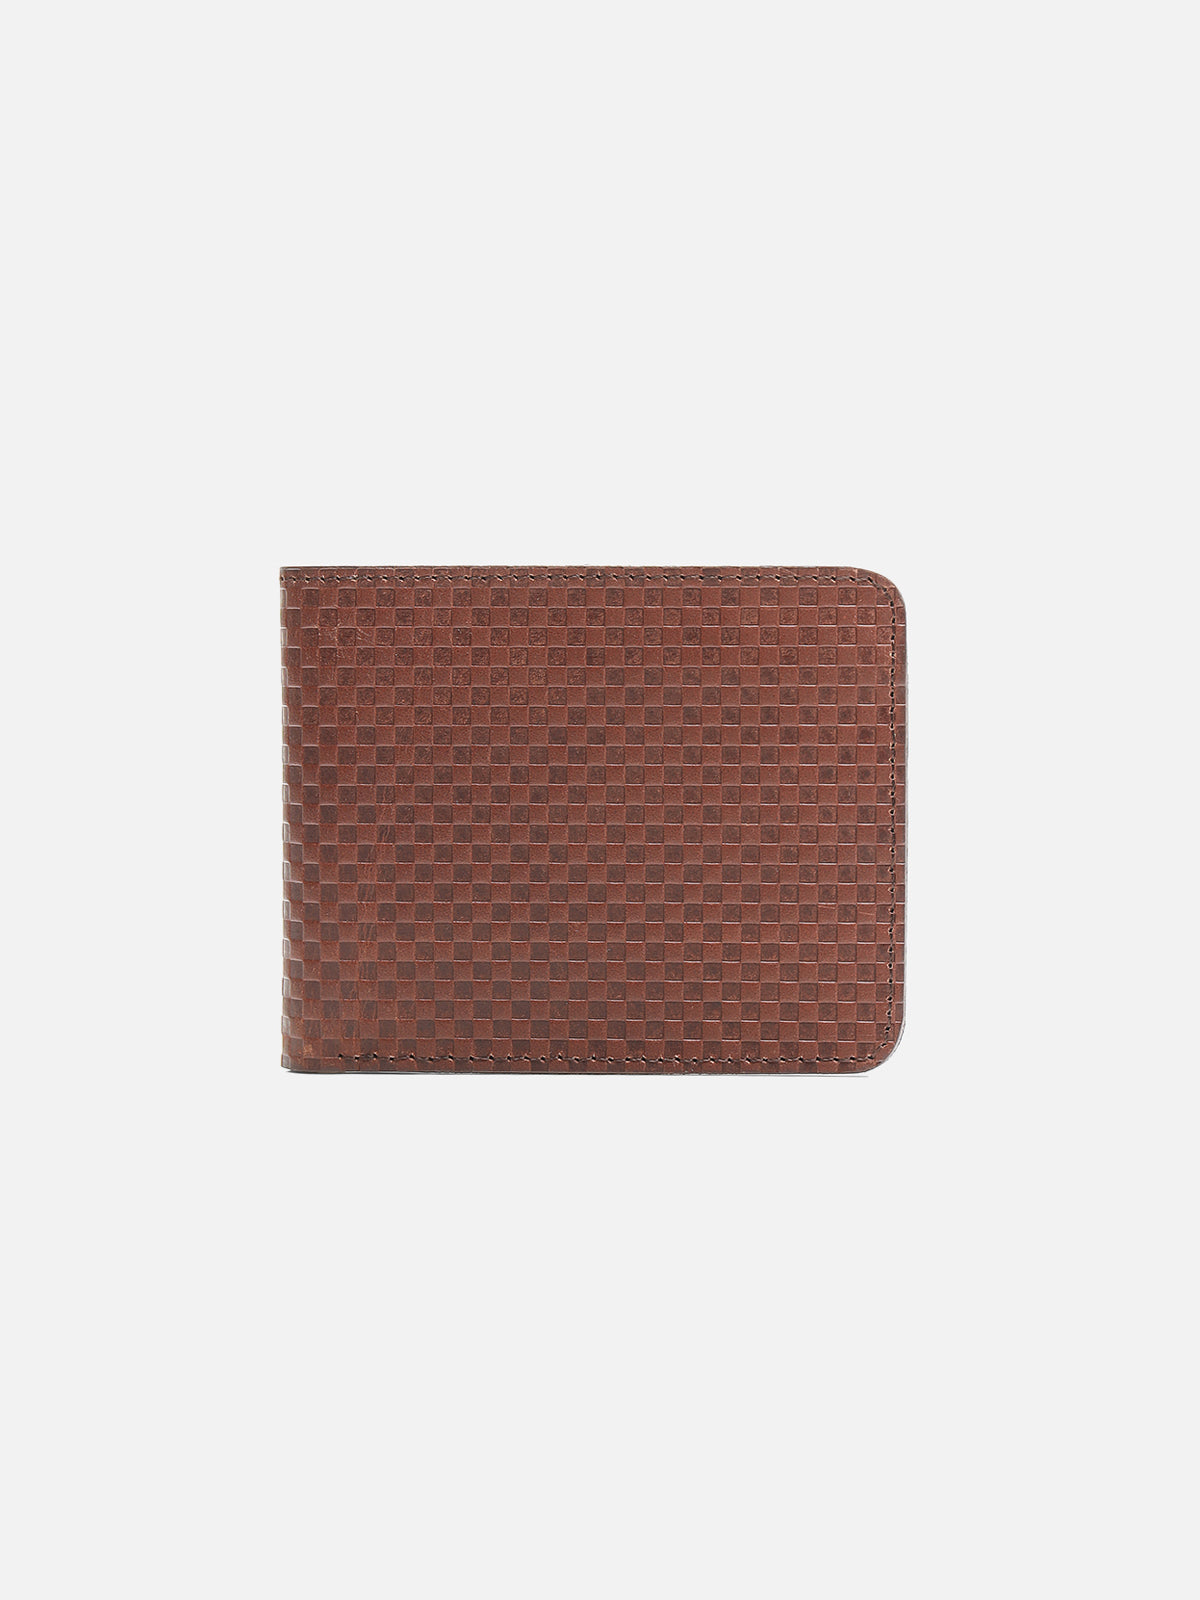 Maroon Leather Wallet - FAMW23-030